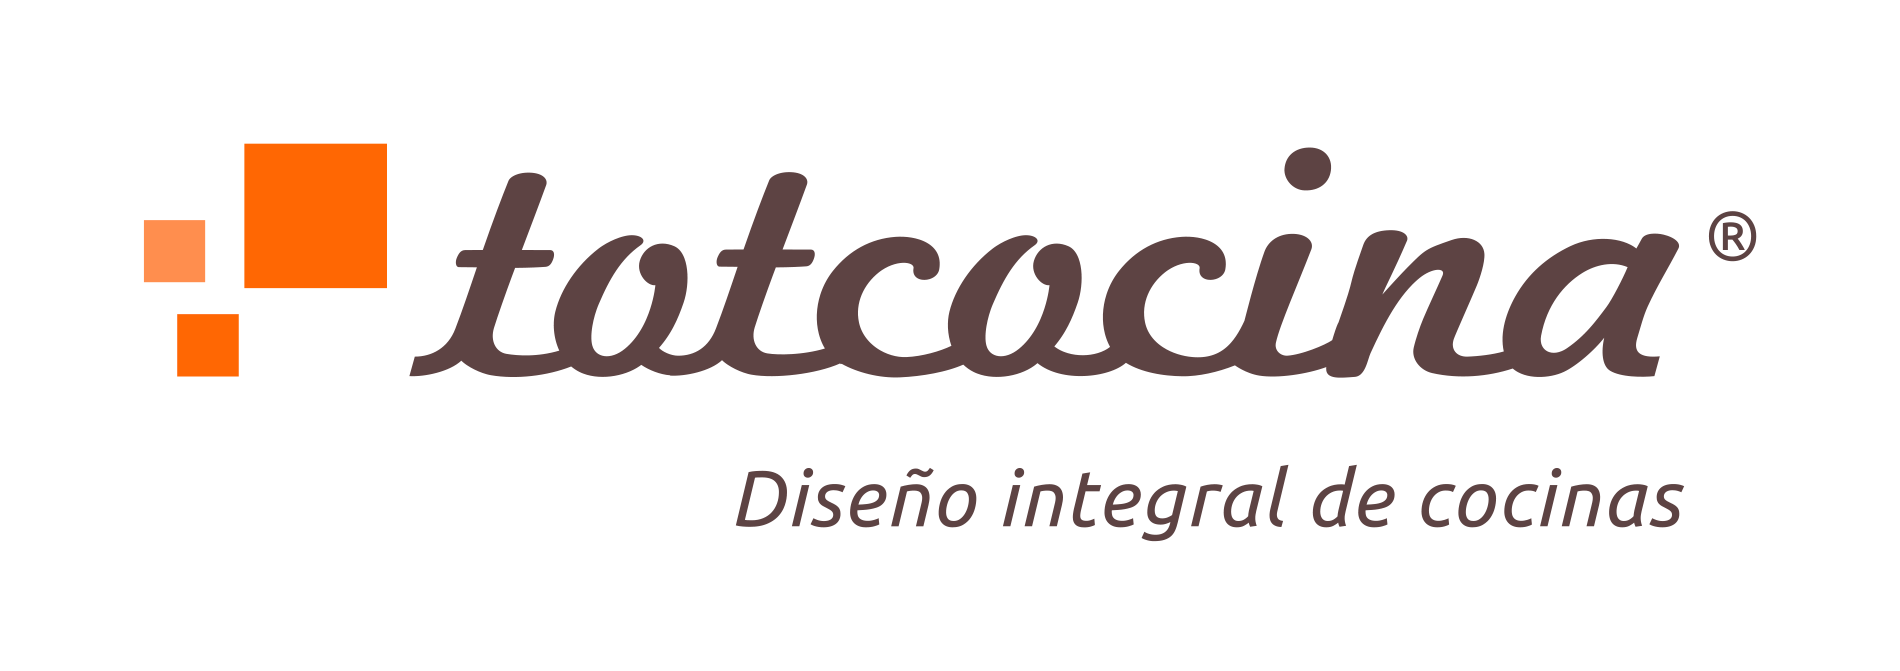 Logo totcocina